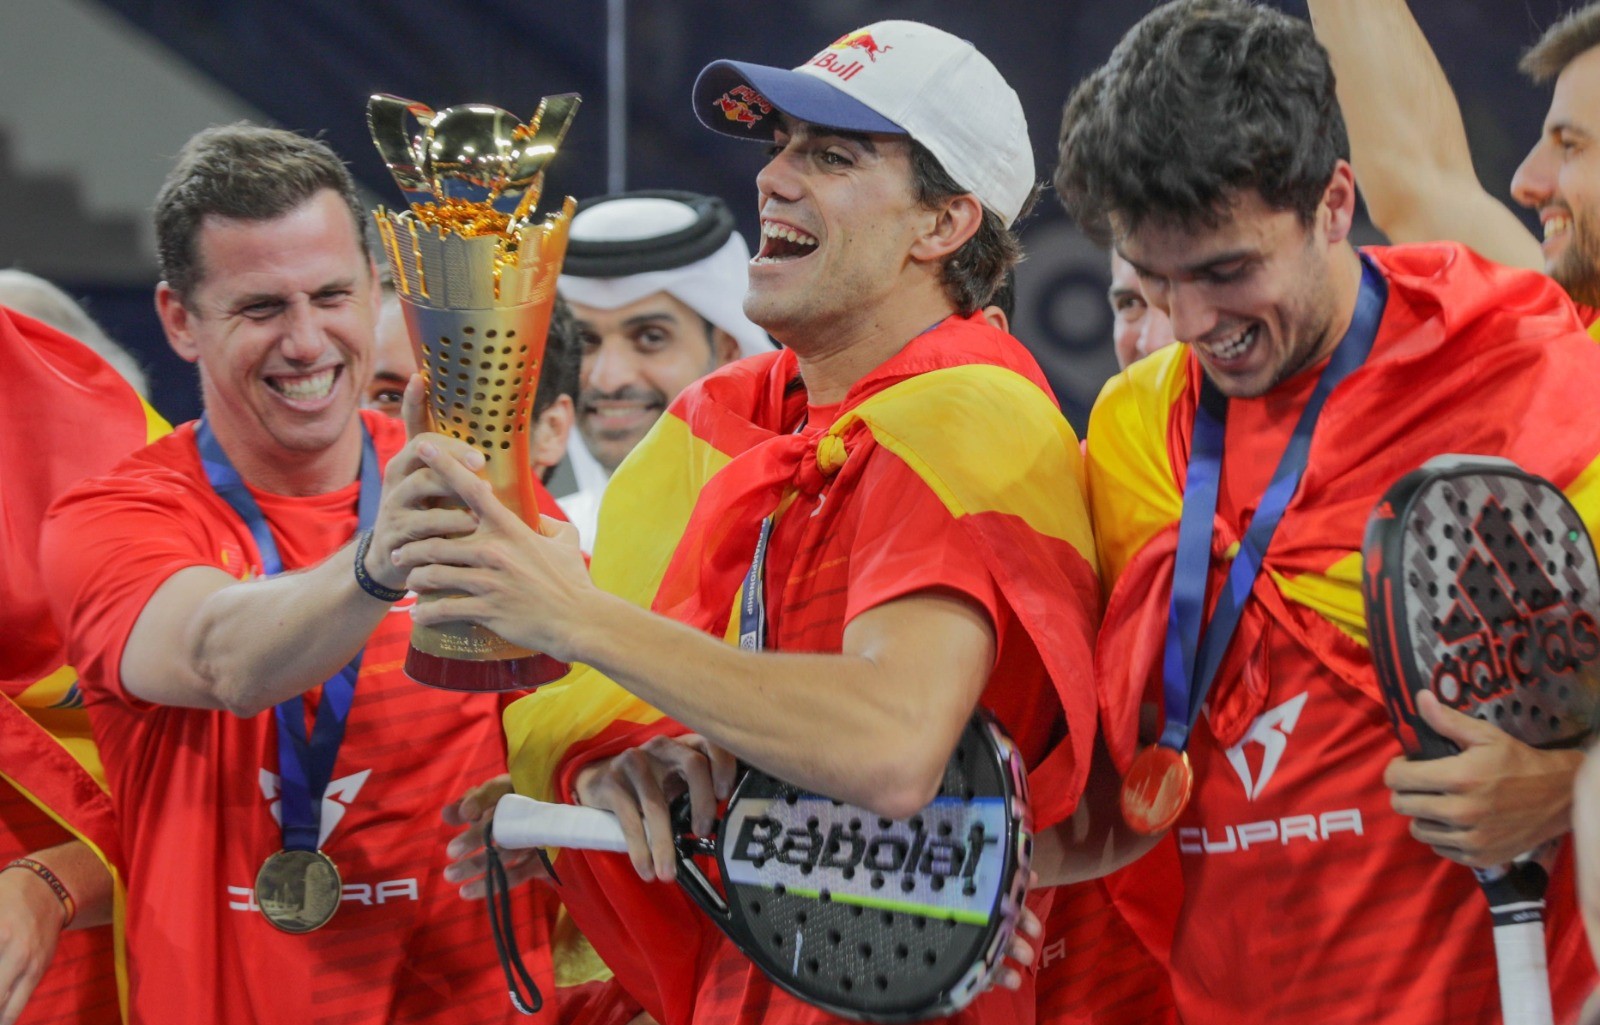 Joy vitória espanha campeões mundiais lebron paquito galan qatar